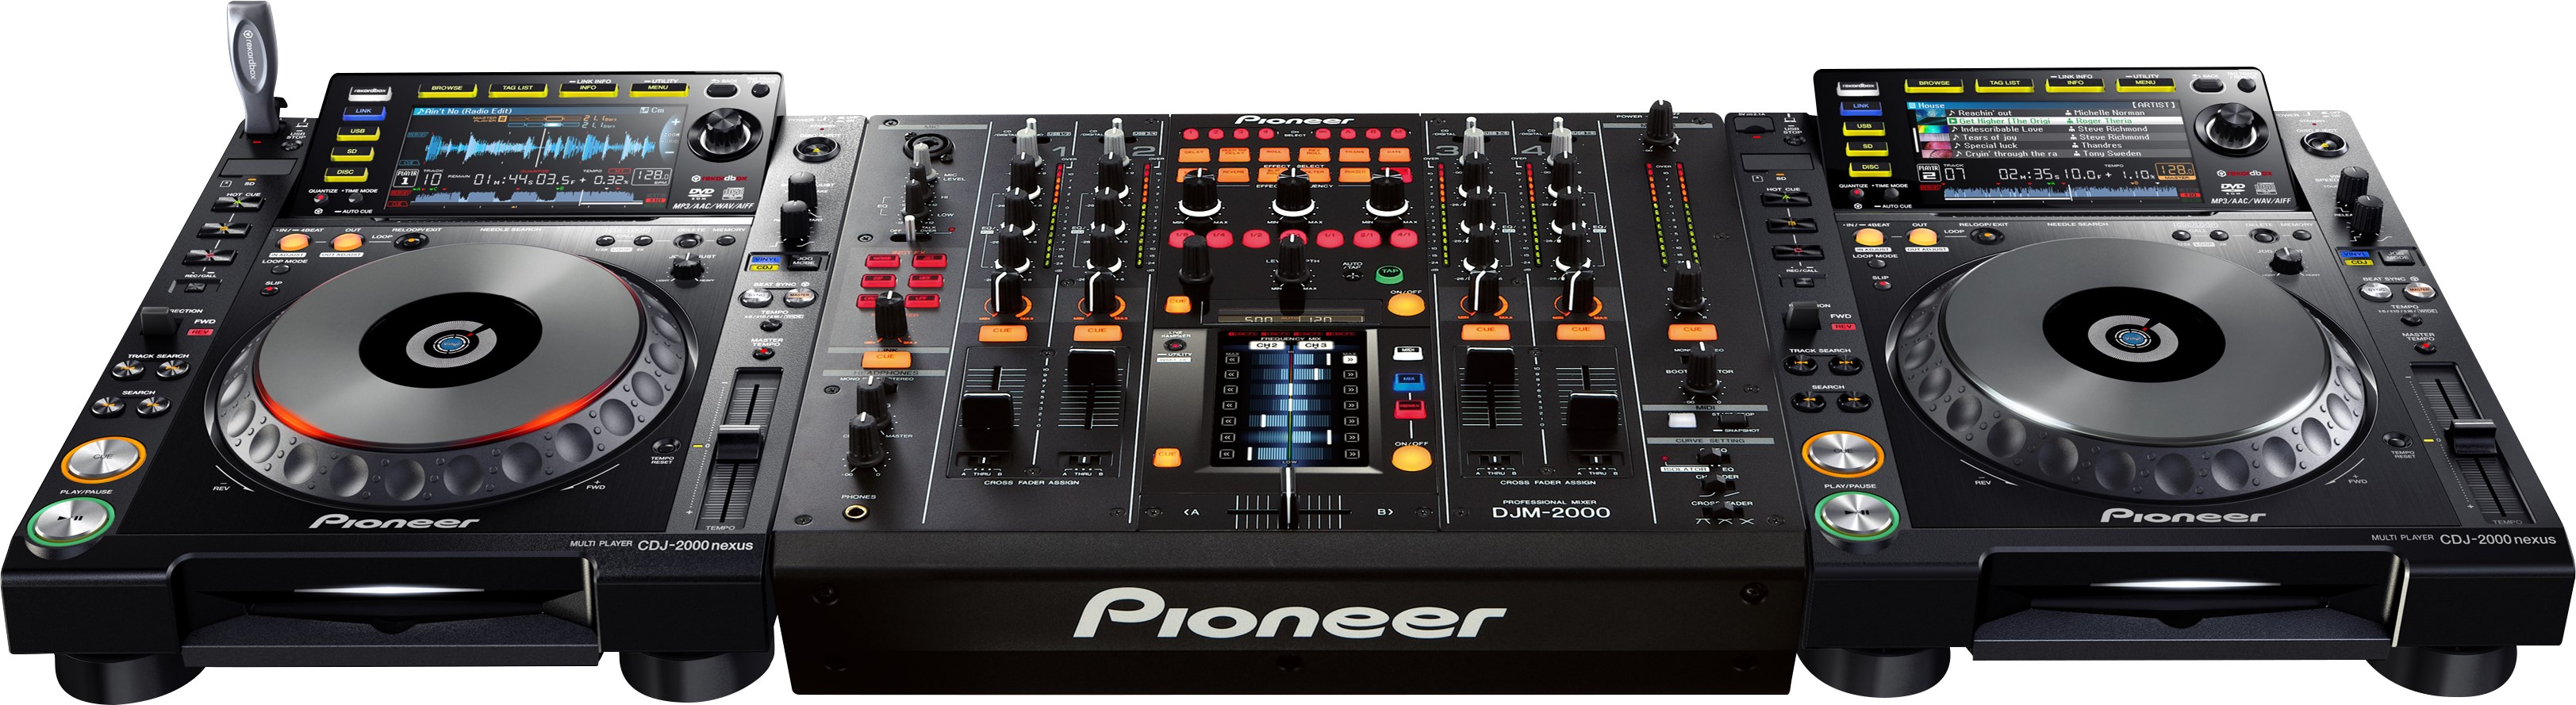 Pioneer Dj Djm2000nexus - DJ mixer - Variation 3